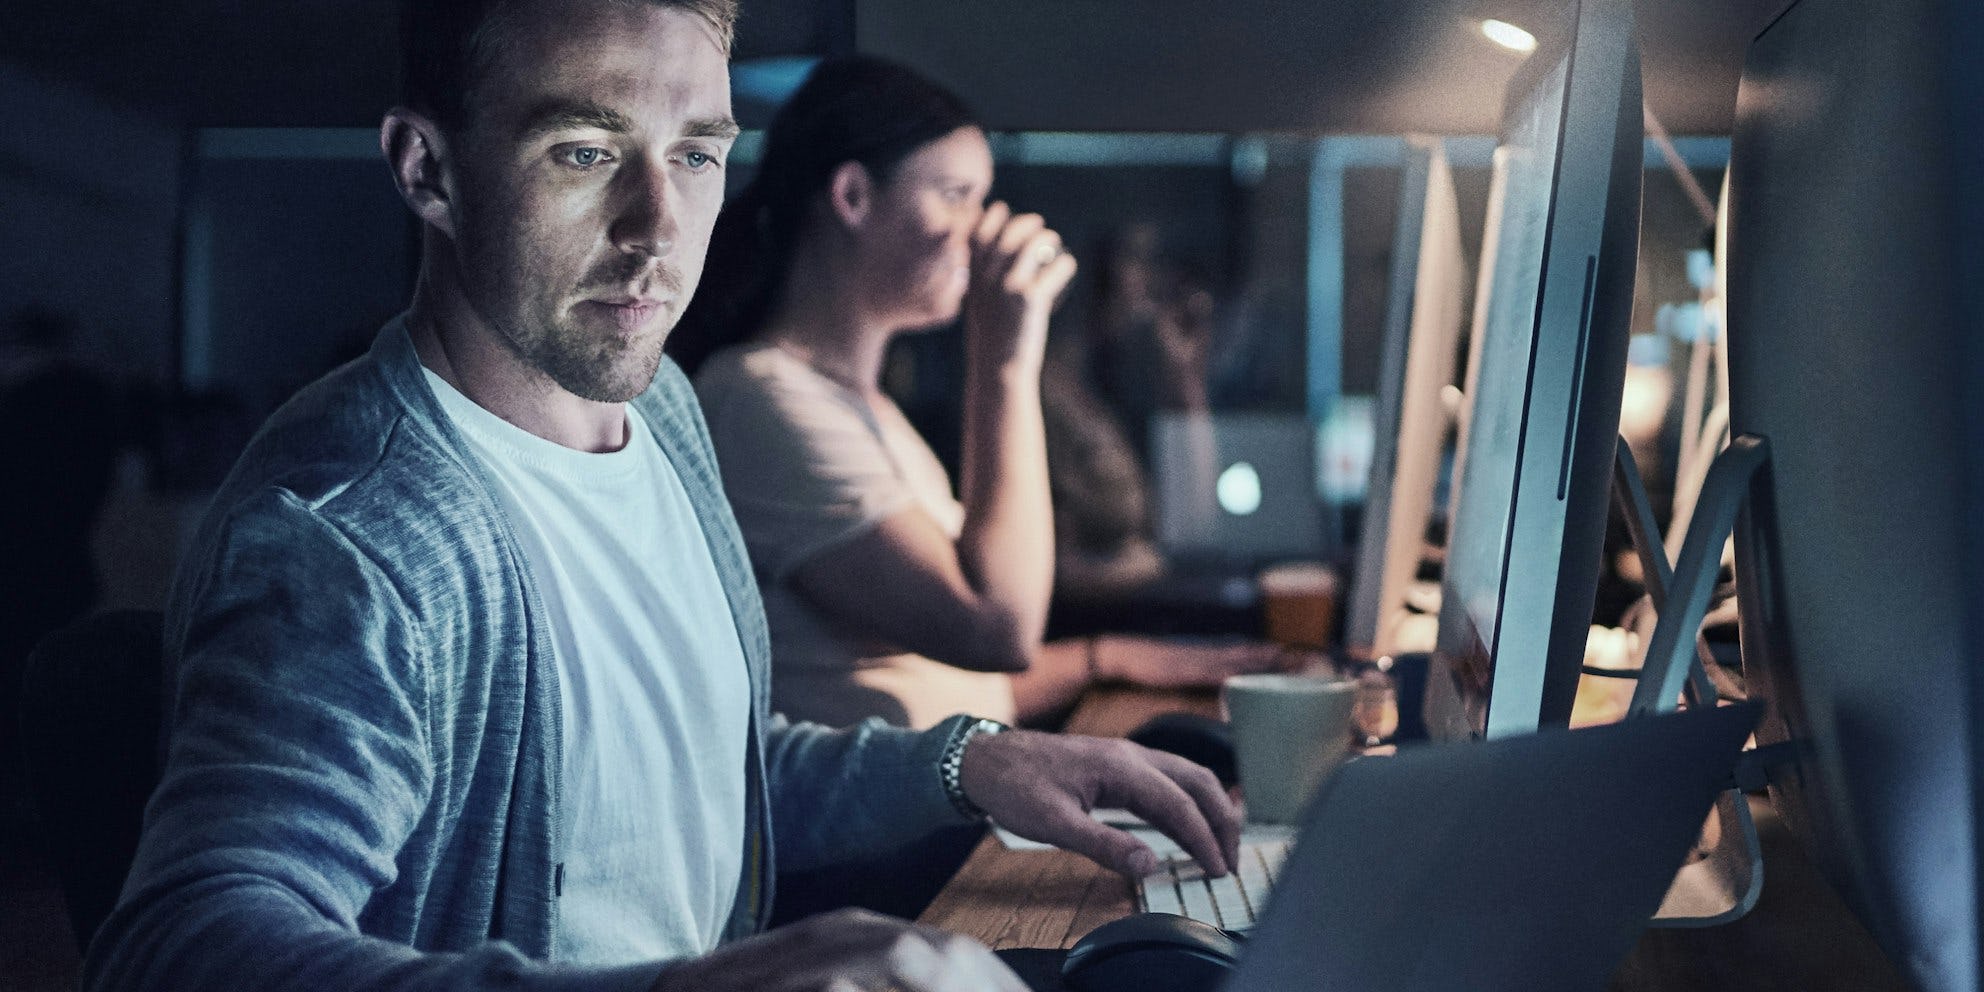 Een man en vrouw werken achter hun computer op kantoor. De man kijkt naar zijn laptop en de vrouw drinkt koffie terwijl ze naar haar computer scherm kijkt.